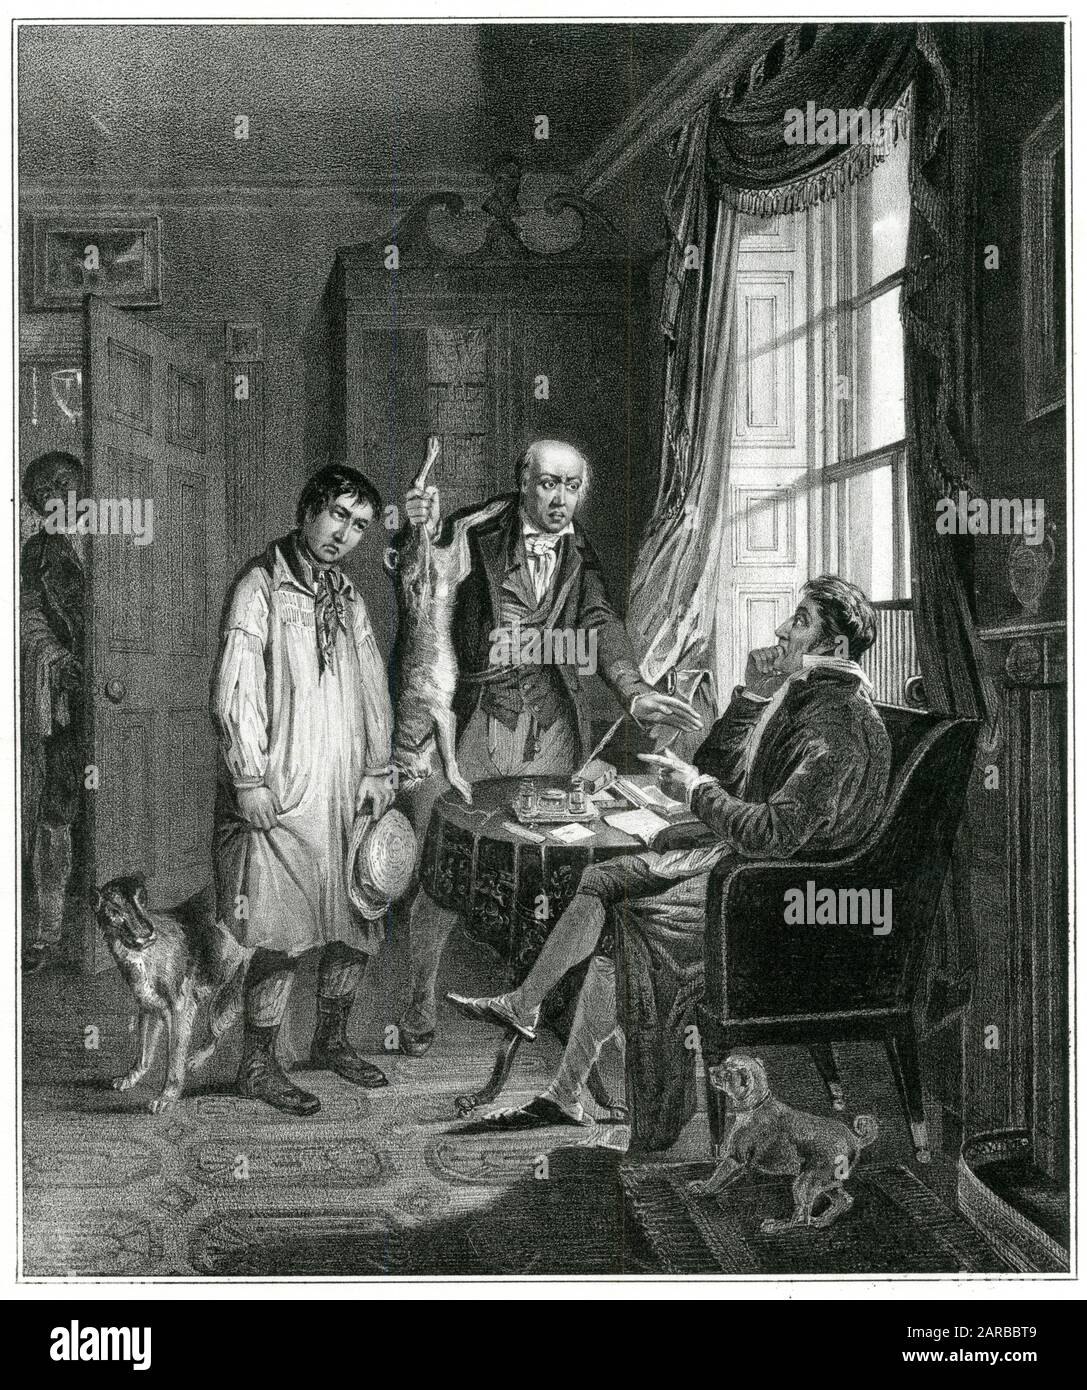 Un lad de pays a été pris braconnant un lièvre, et maintenant il est porté devant le propriétaire de la succession Date: Vers 1830 Banque D'Images